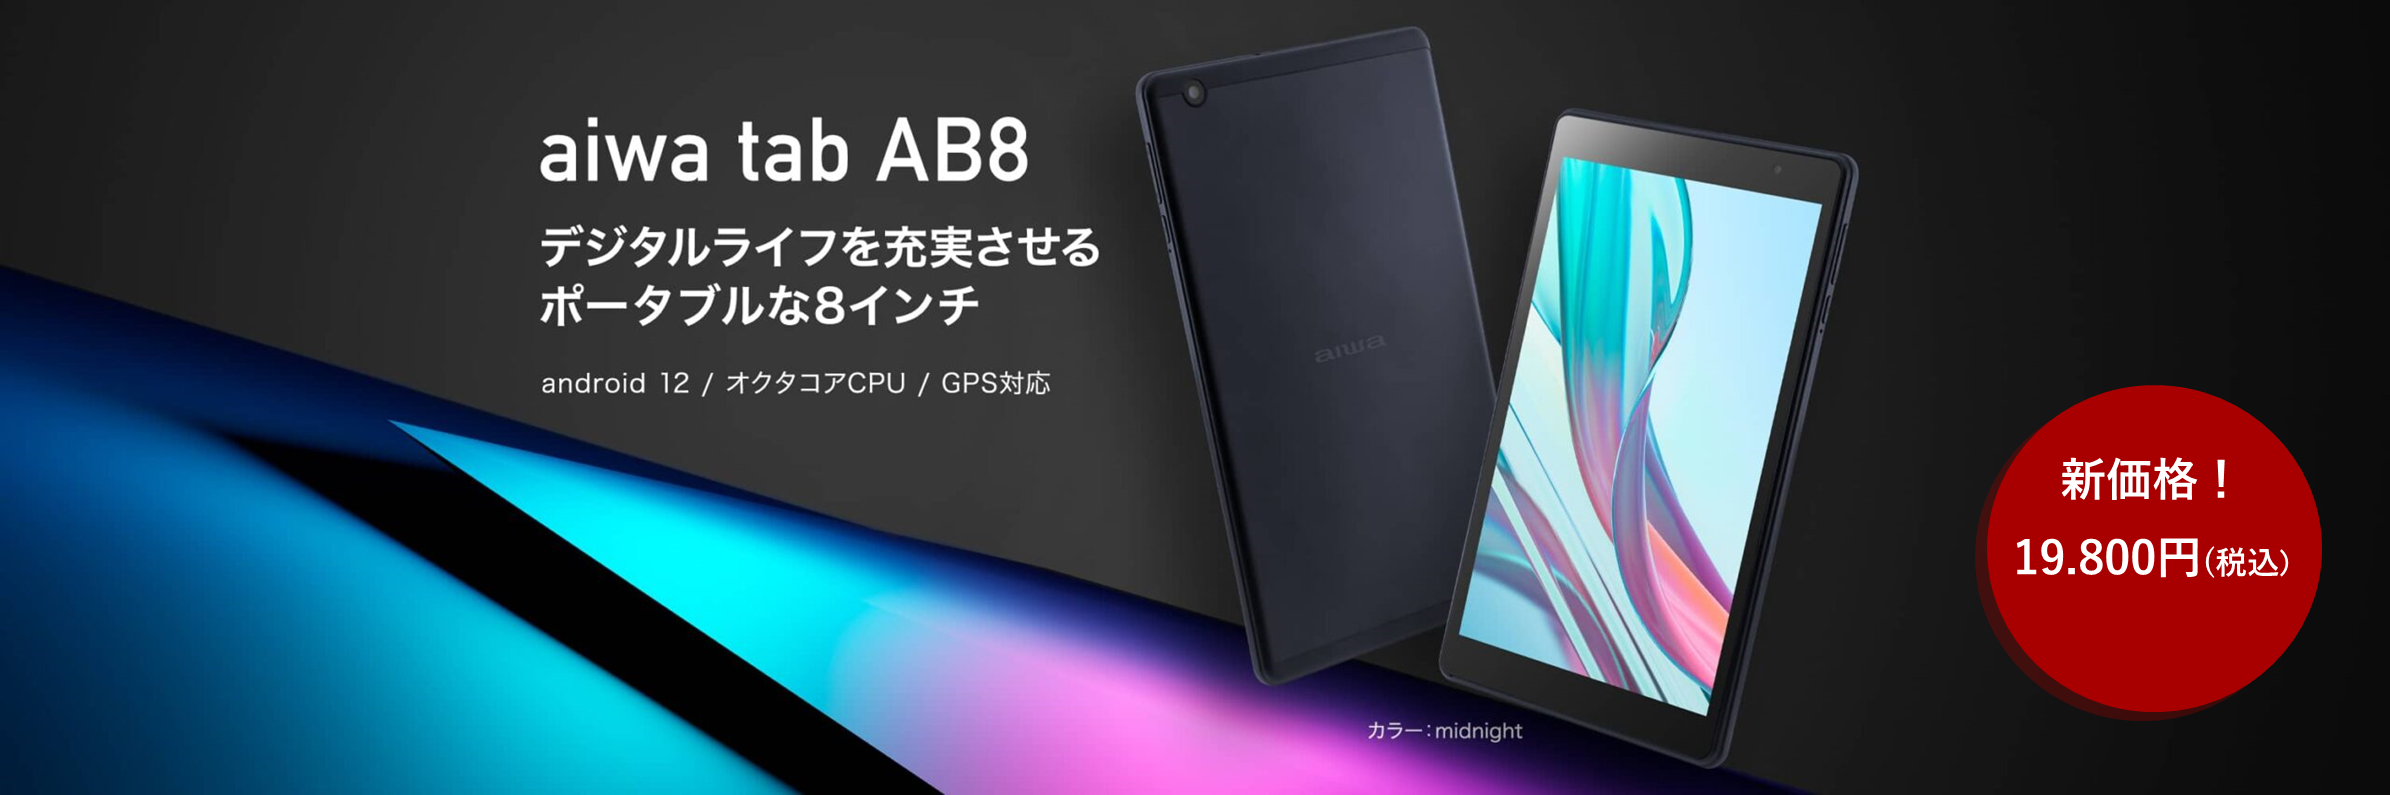 aiwaの人気８インチタブレットが1万円台の新価格に” 【aiwa tab AB8 